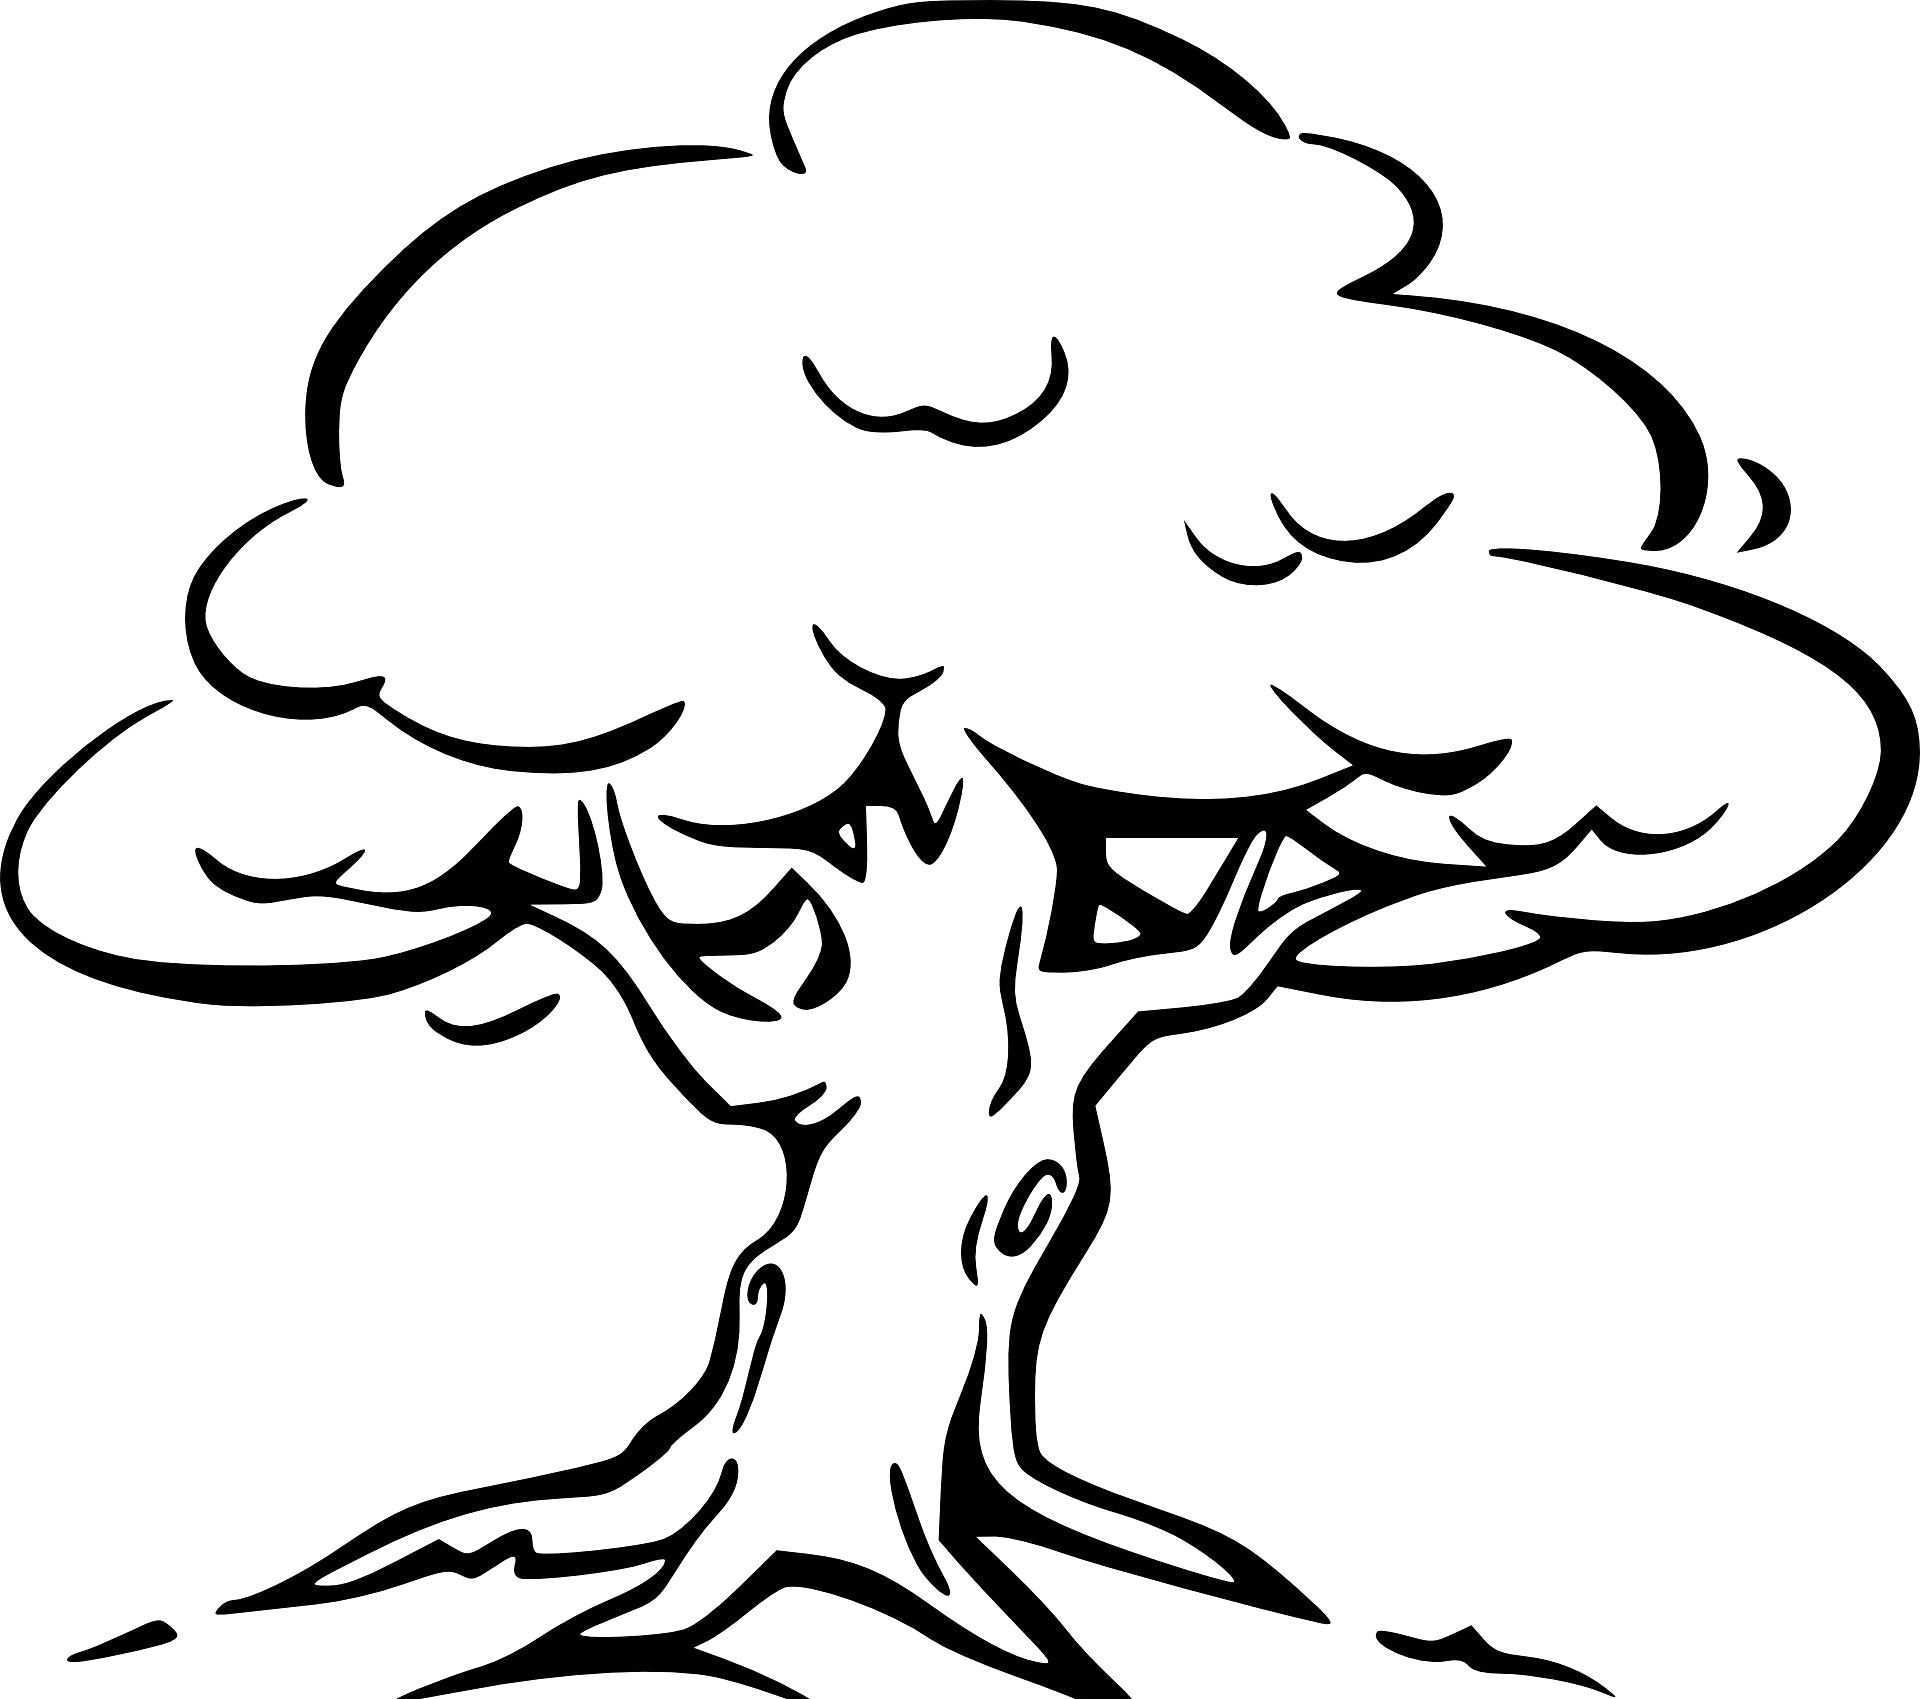 Baum Mit Wurzeln Ausmalbild Malvorlagen Baum Zeichnung Ausmalbilder